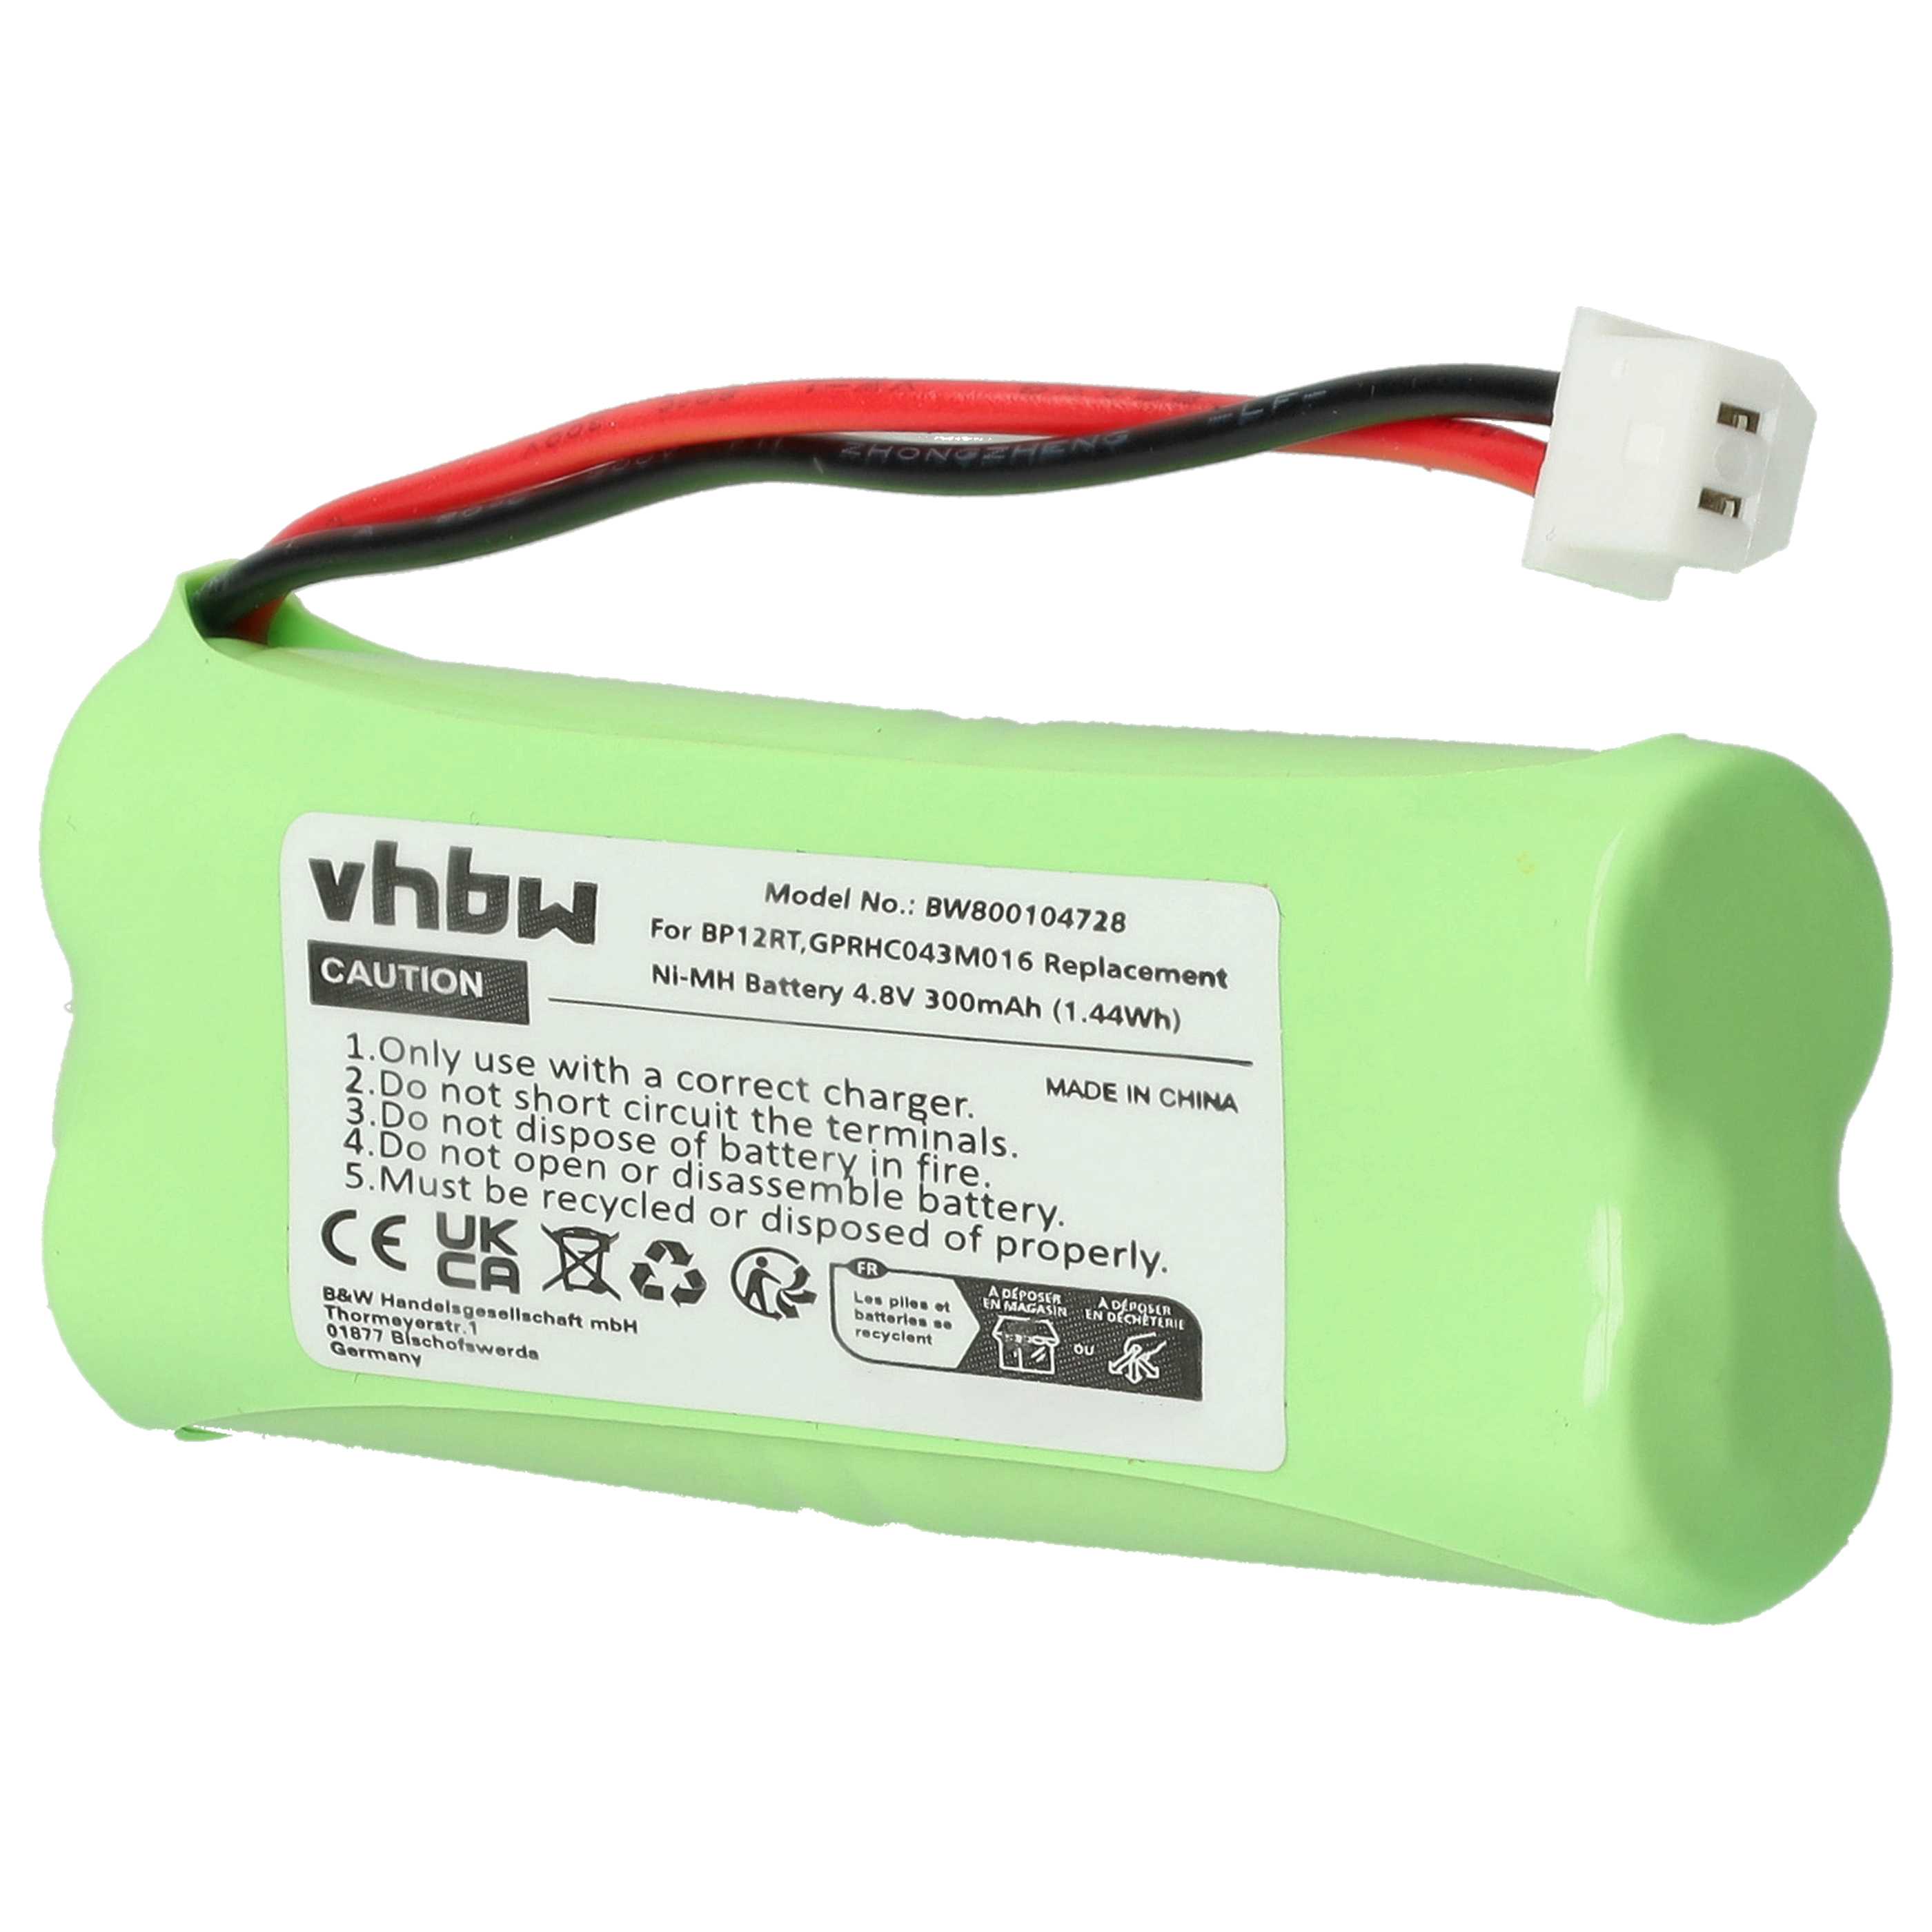 Batterie remplace Dogtra GPRHC043M016, BP12RT pour collier de dressage de chien - 300mAh 4,8V NiMH